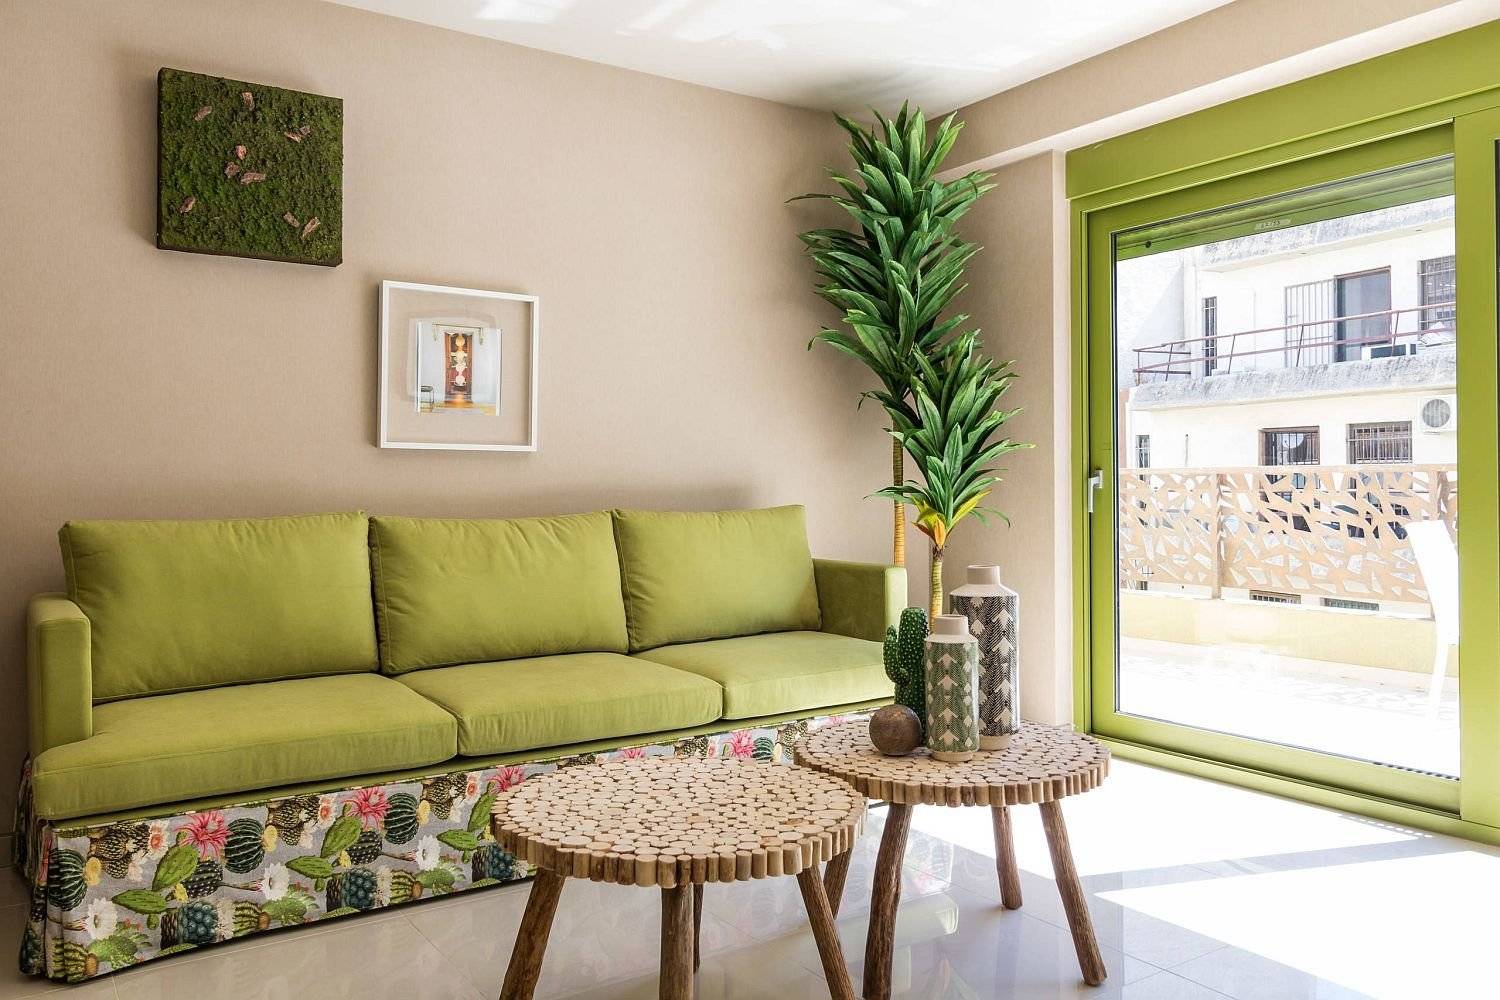 Как подобрать цвет дивана к интерьеру: советы по выбору цвета дивана и идеи сочетания цветов